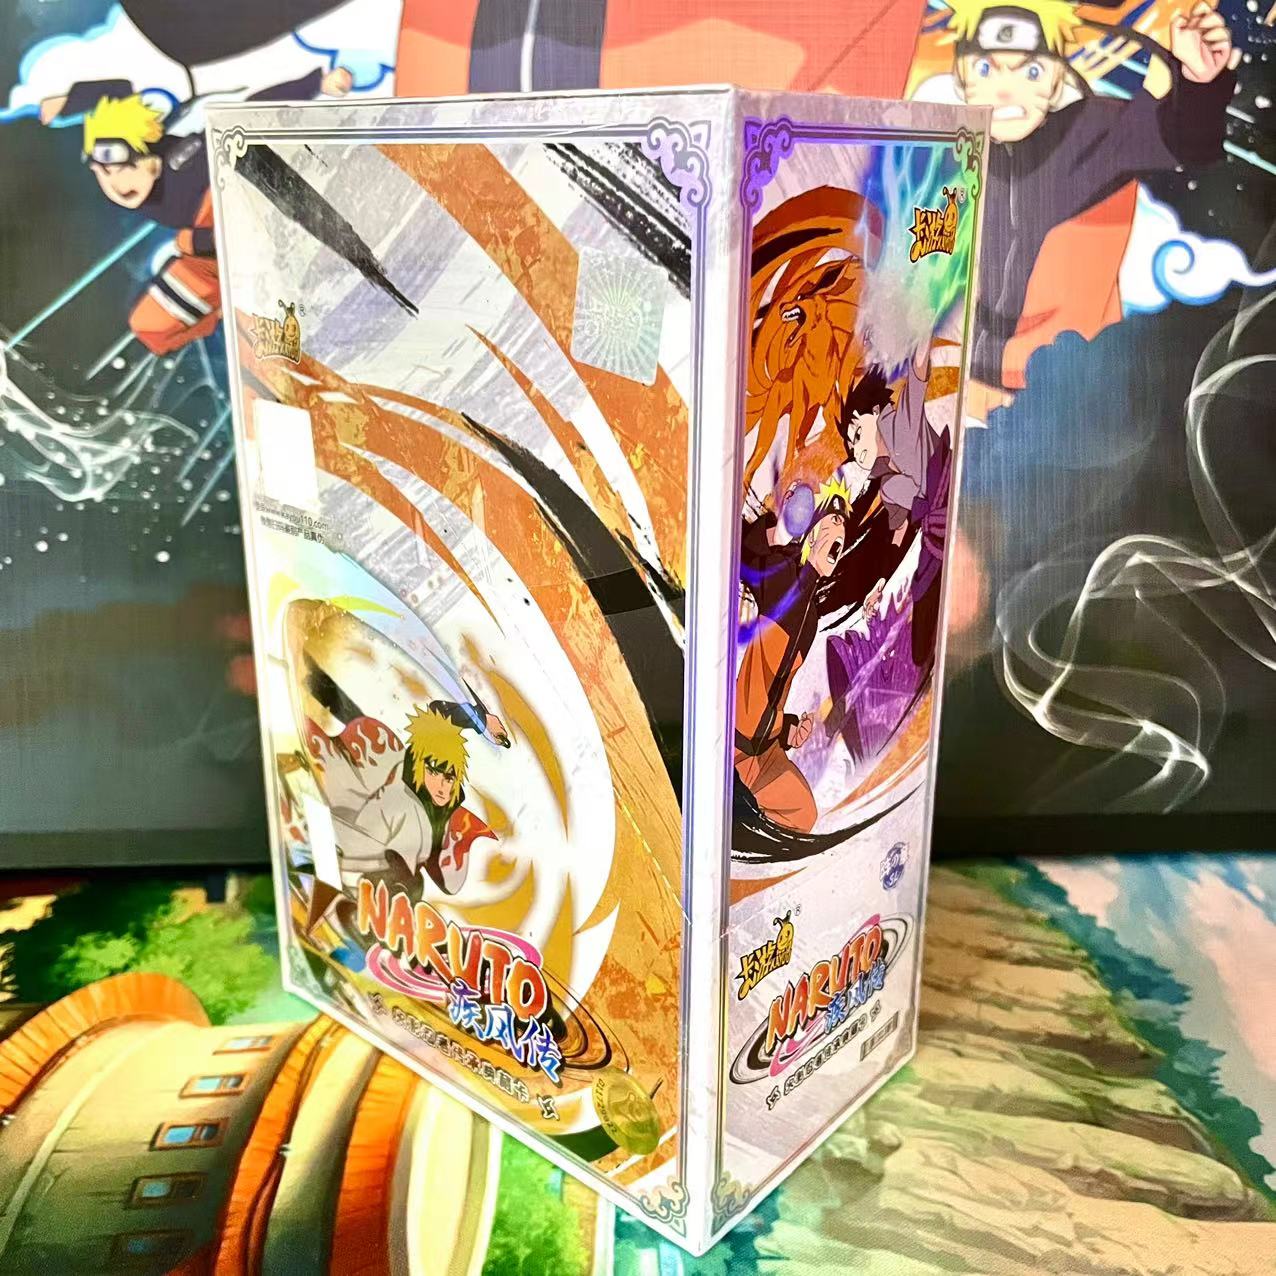 Display - Kayou Naruto Cards Booster Box Display Serials - TCG Naruto Cardgame